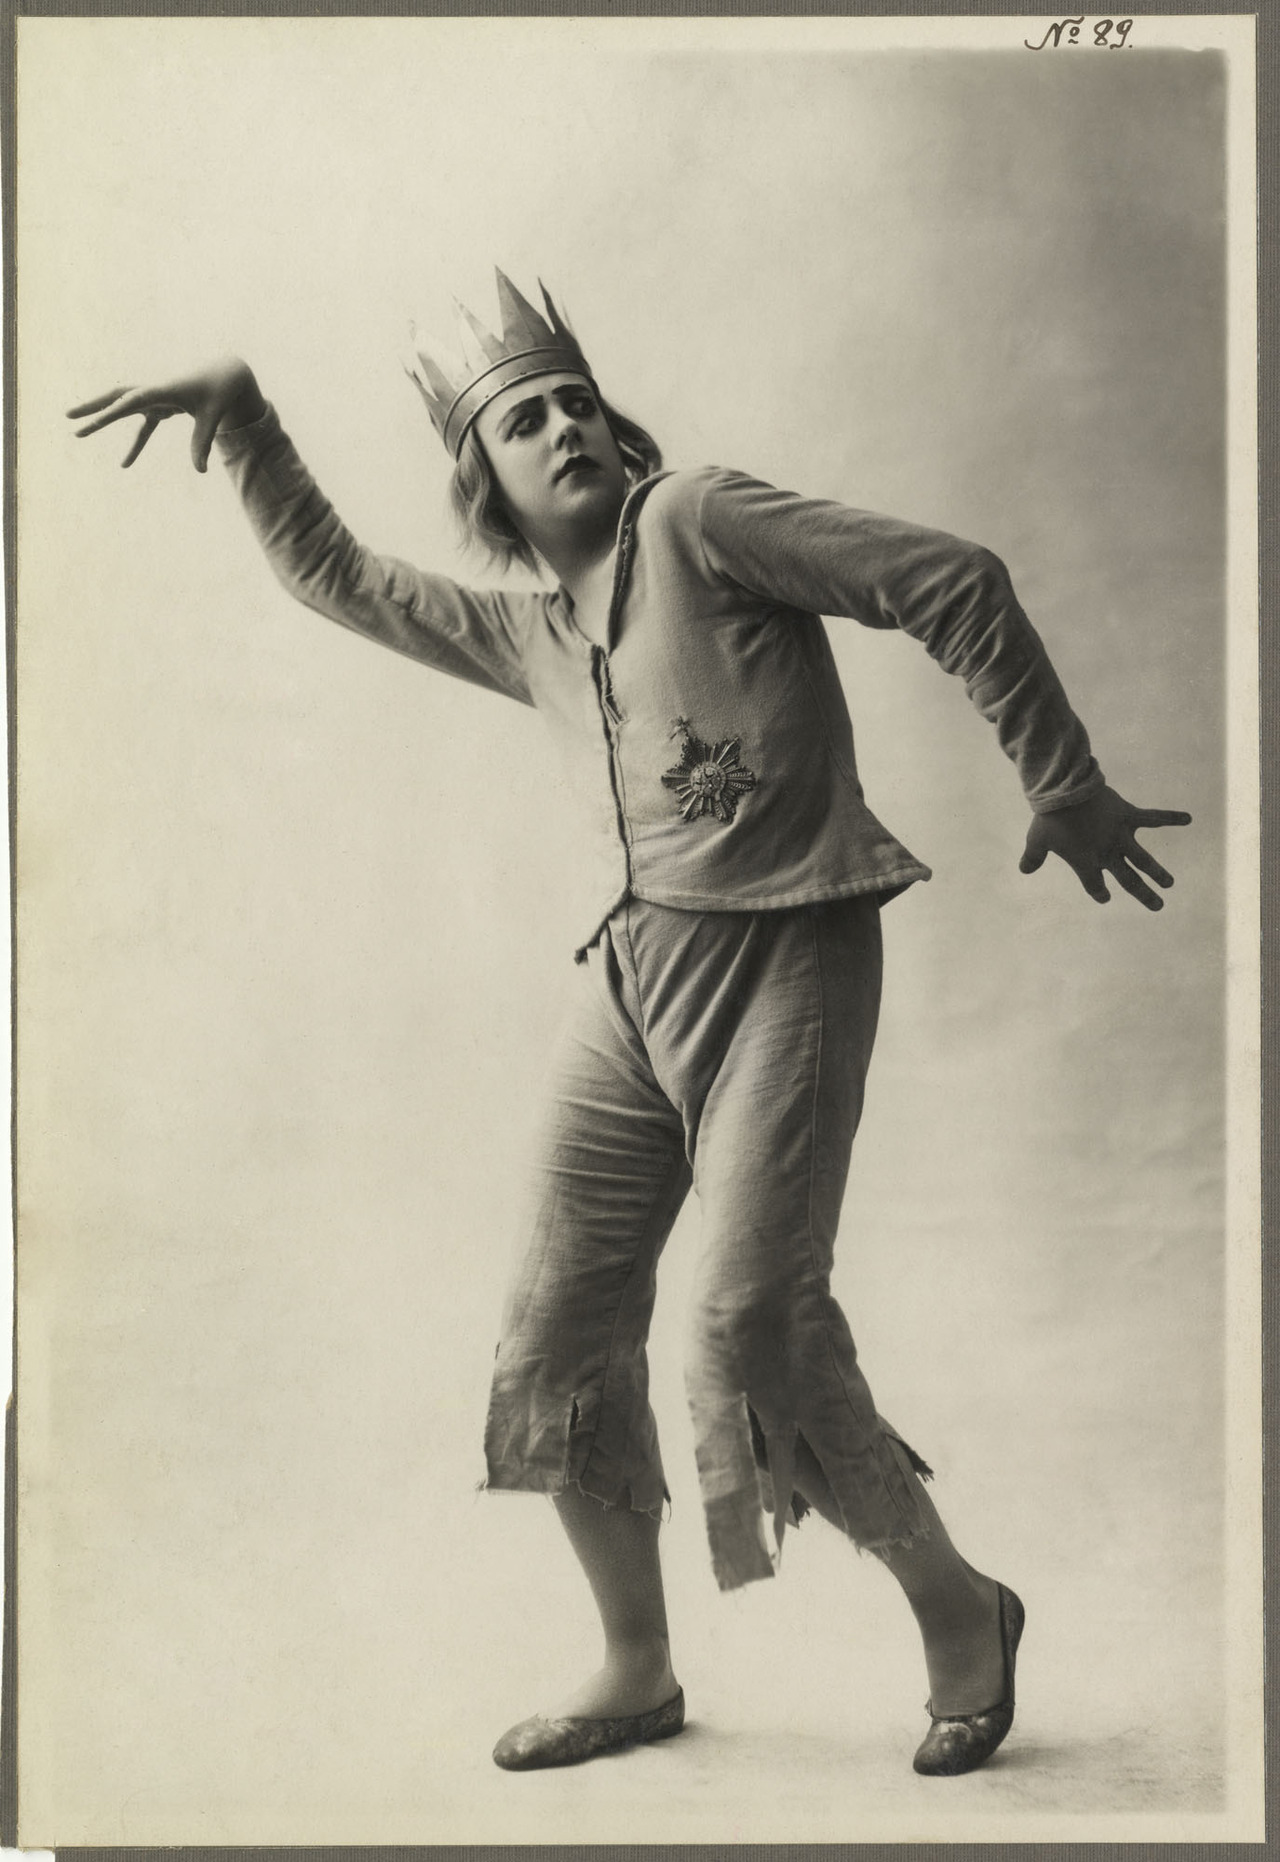 Le danseur Jean Börlin in ‘Maison de fous’ (as the Prince), 1920. Ballets Suédois. Photo Isabey. | src BnF, Bibliothèque-musée de l’Opéra via res musica 